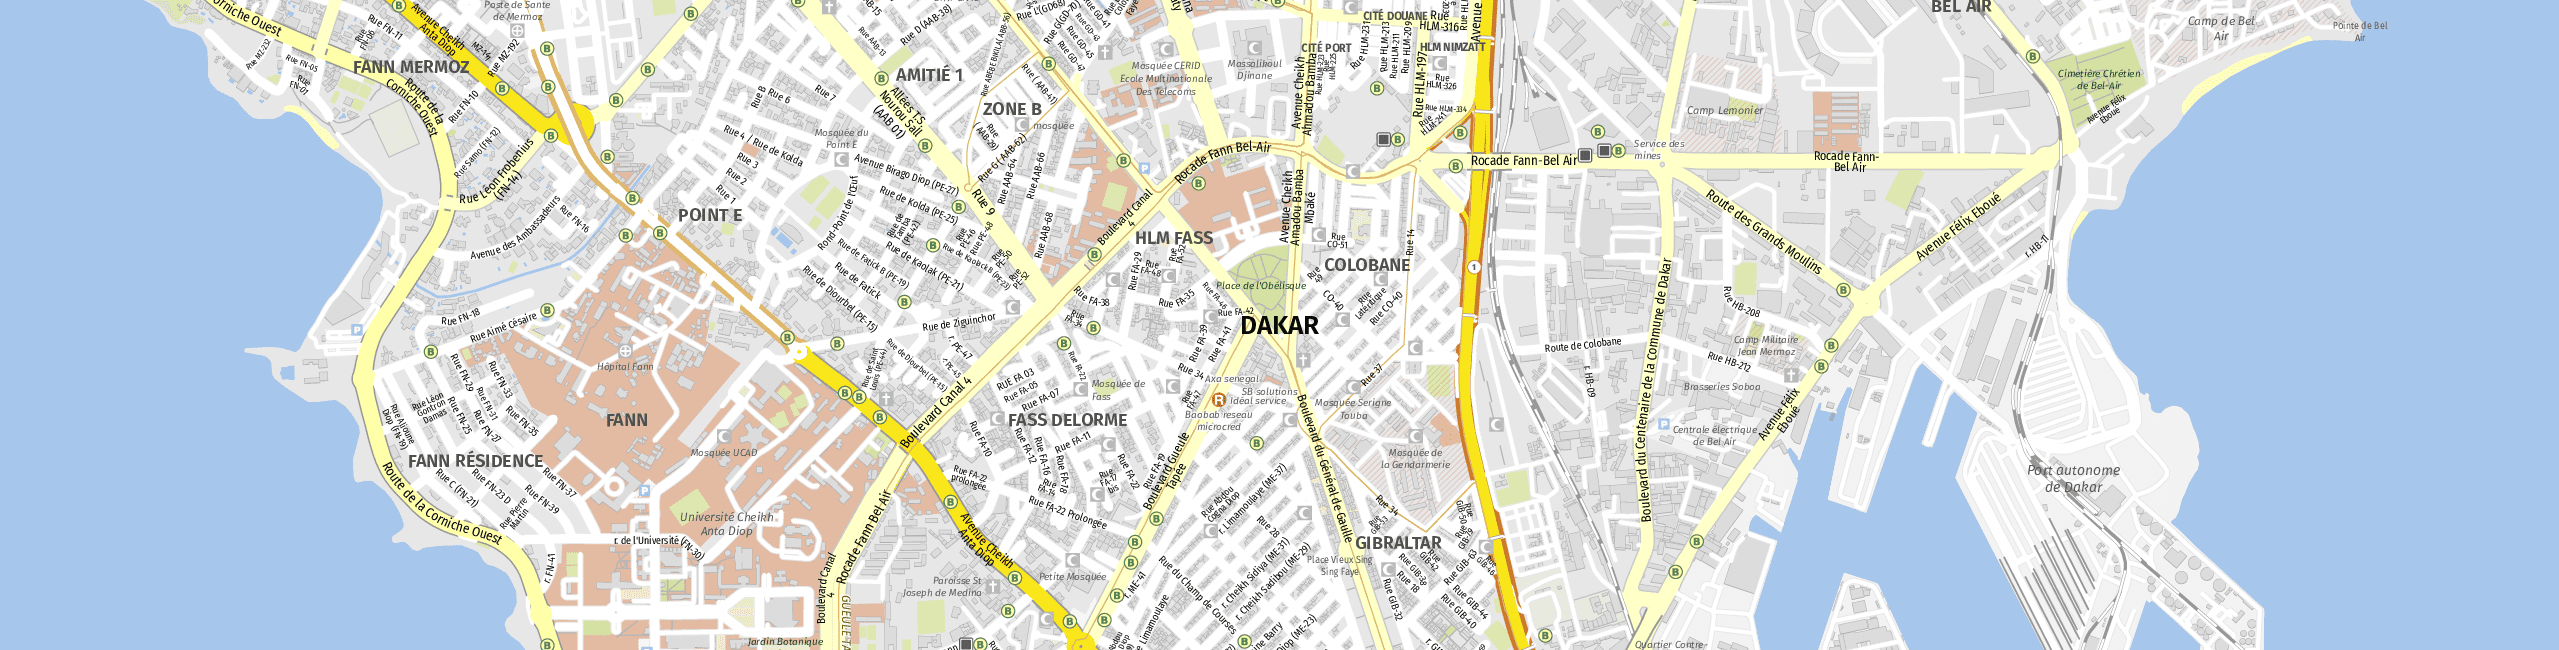 Stadtplan Dakar zum Downloaden.